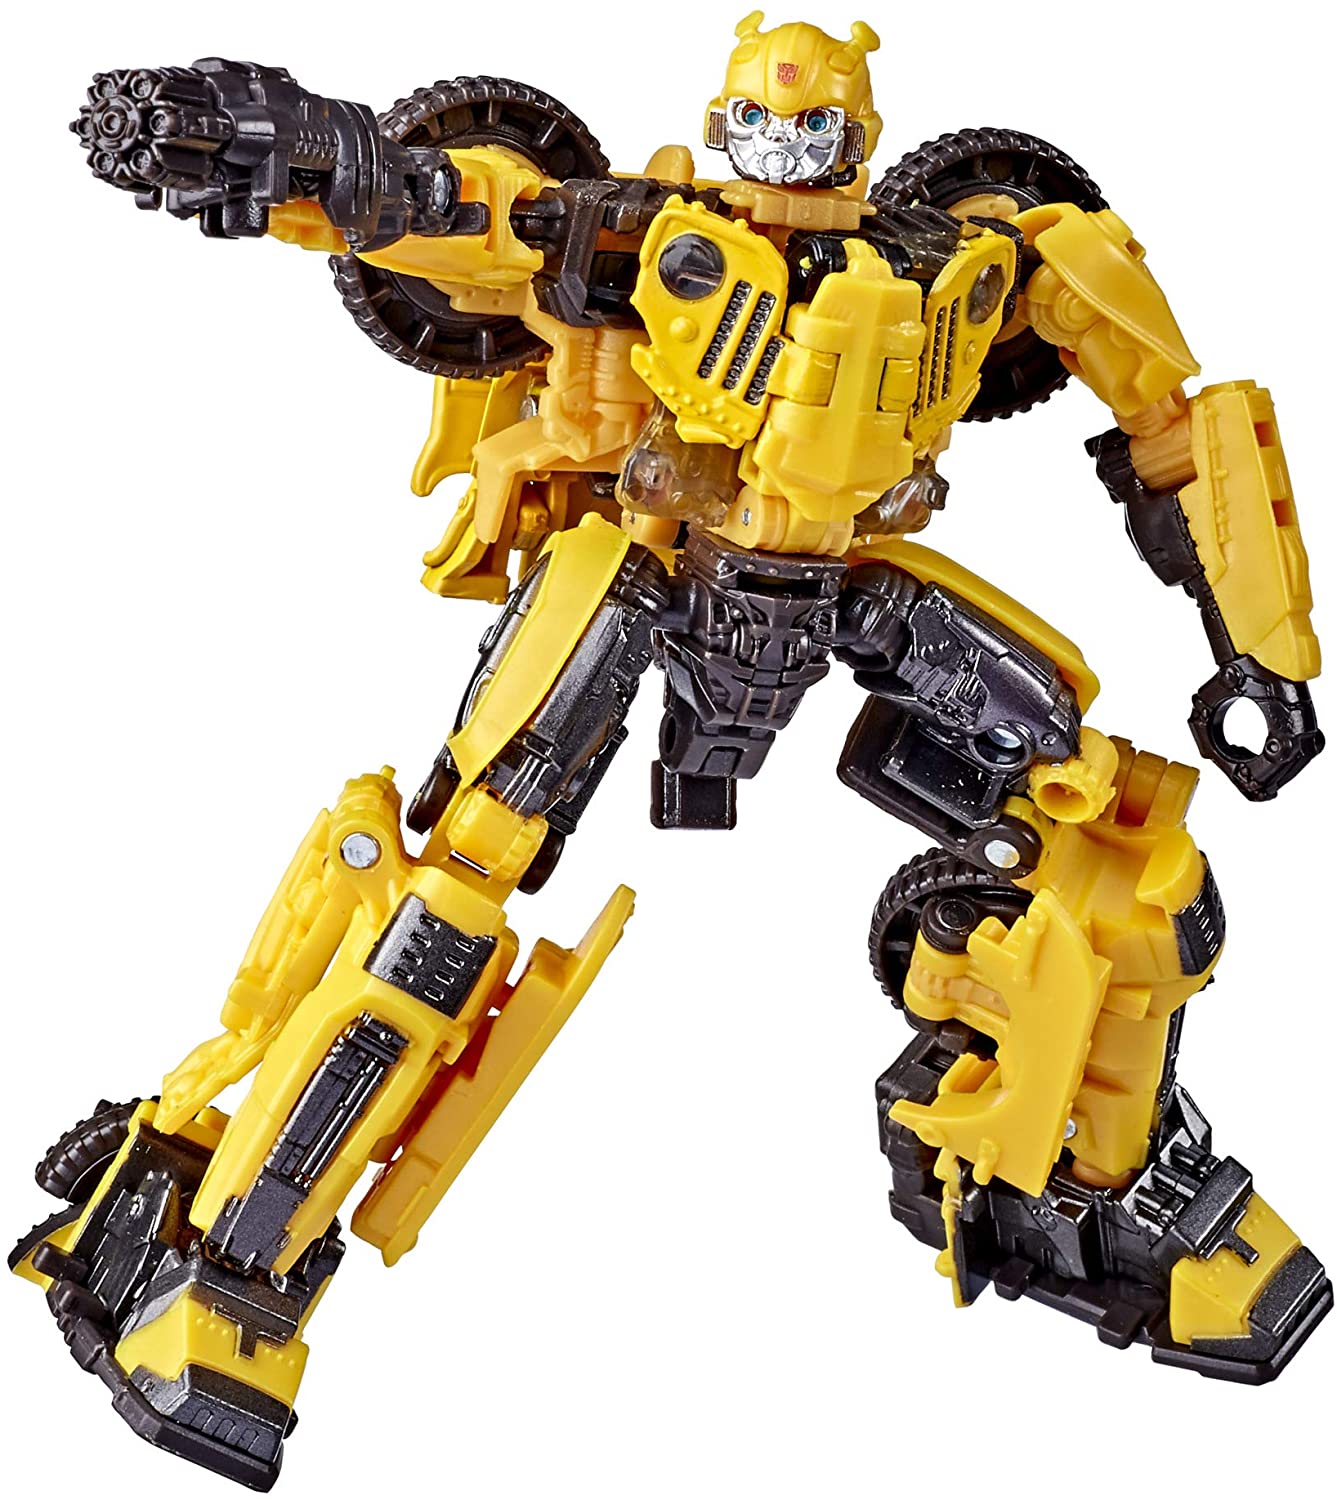 Transformers Generations Studio Series #57 Deluxe Offroad Bumblee Action Figure